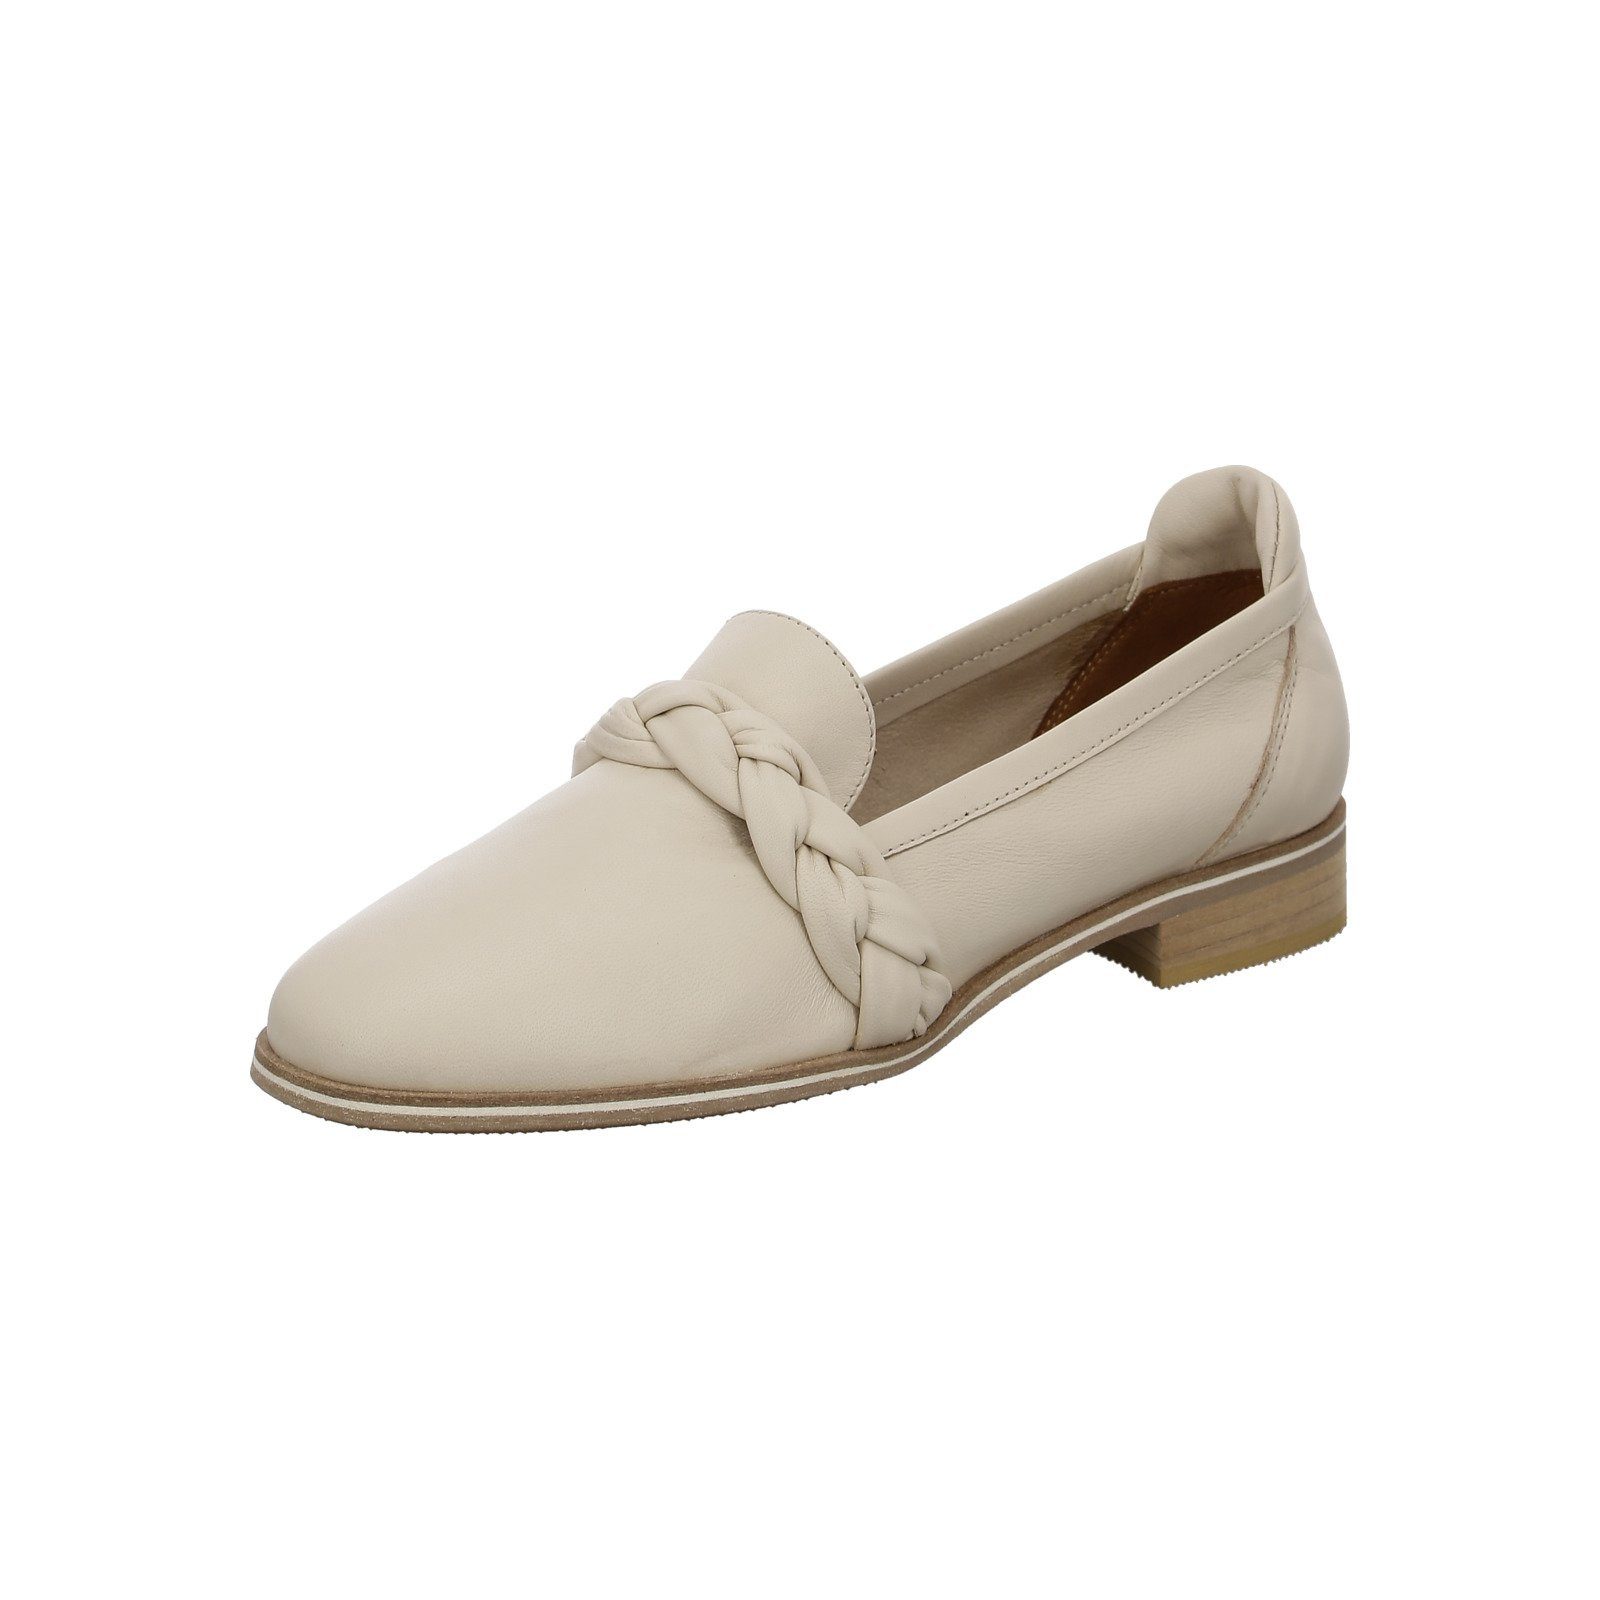 Everybody Alberobello - Damen Schuhe Slipper beige